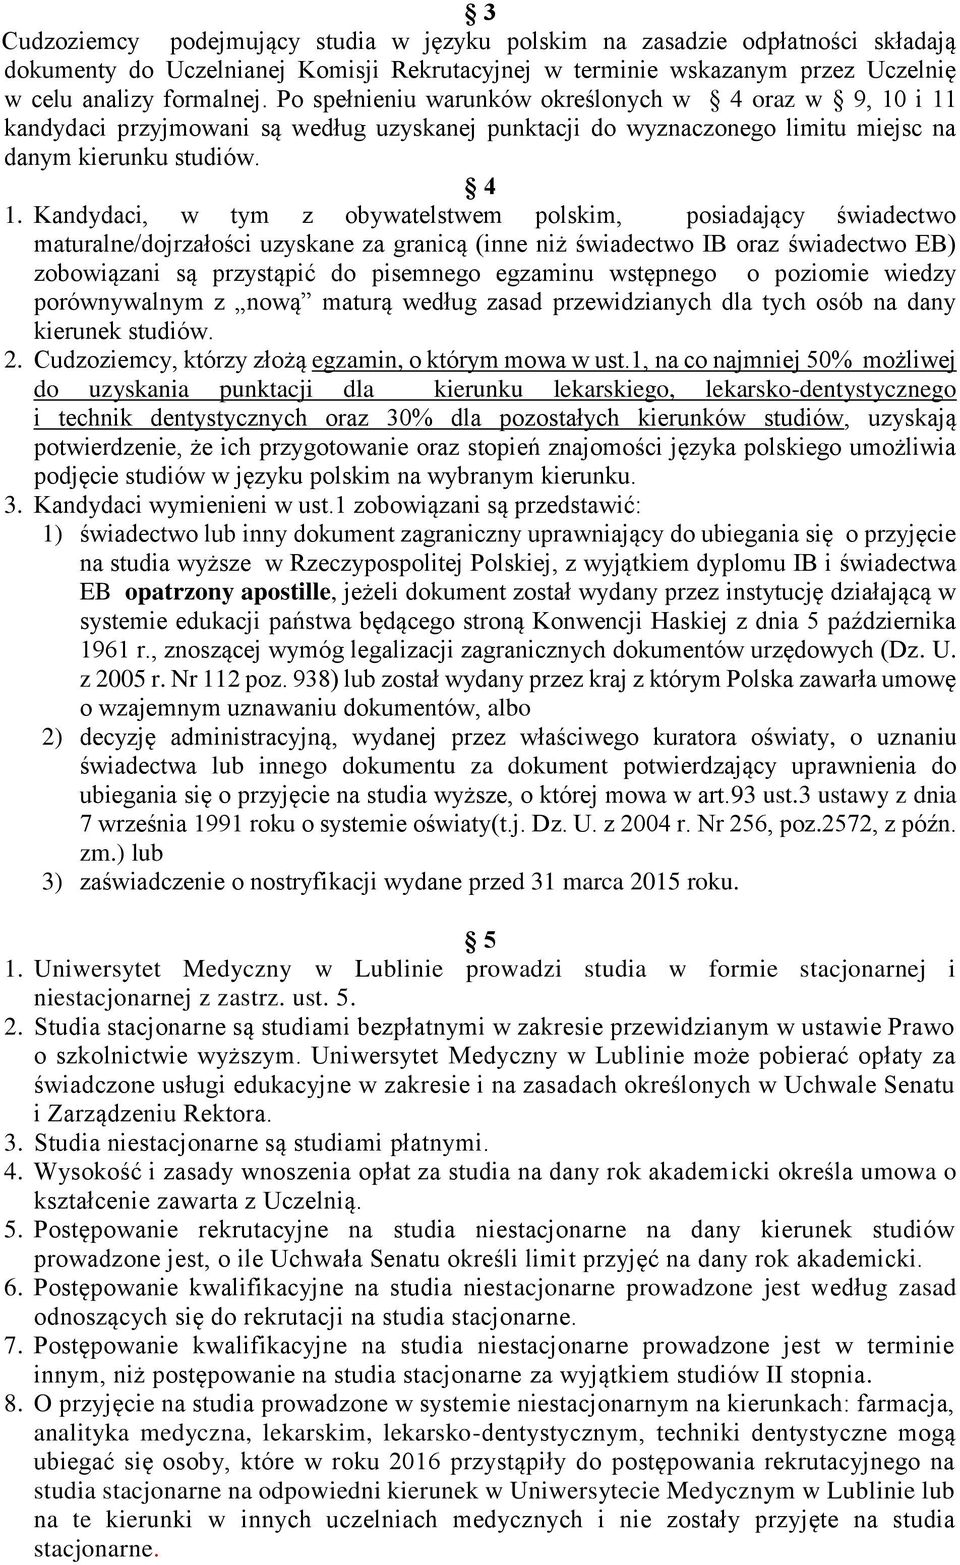 Kandydaci, w tym z obywatelstwem polskim, posiadający świadectwo maturalne/dojrzałości uzyskane za granicą (inne niż świadectwo IB oraz świadectwo EB) zobowiązani są przystąpić do pisemnego egzaminu